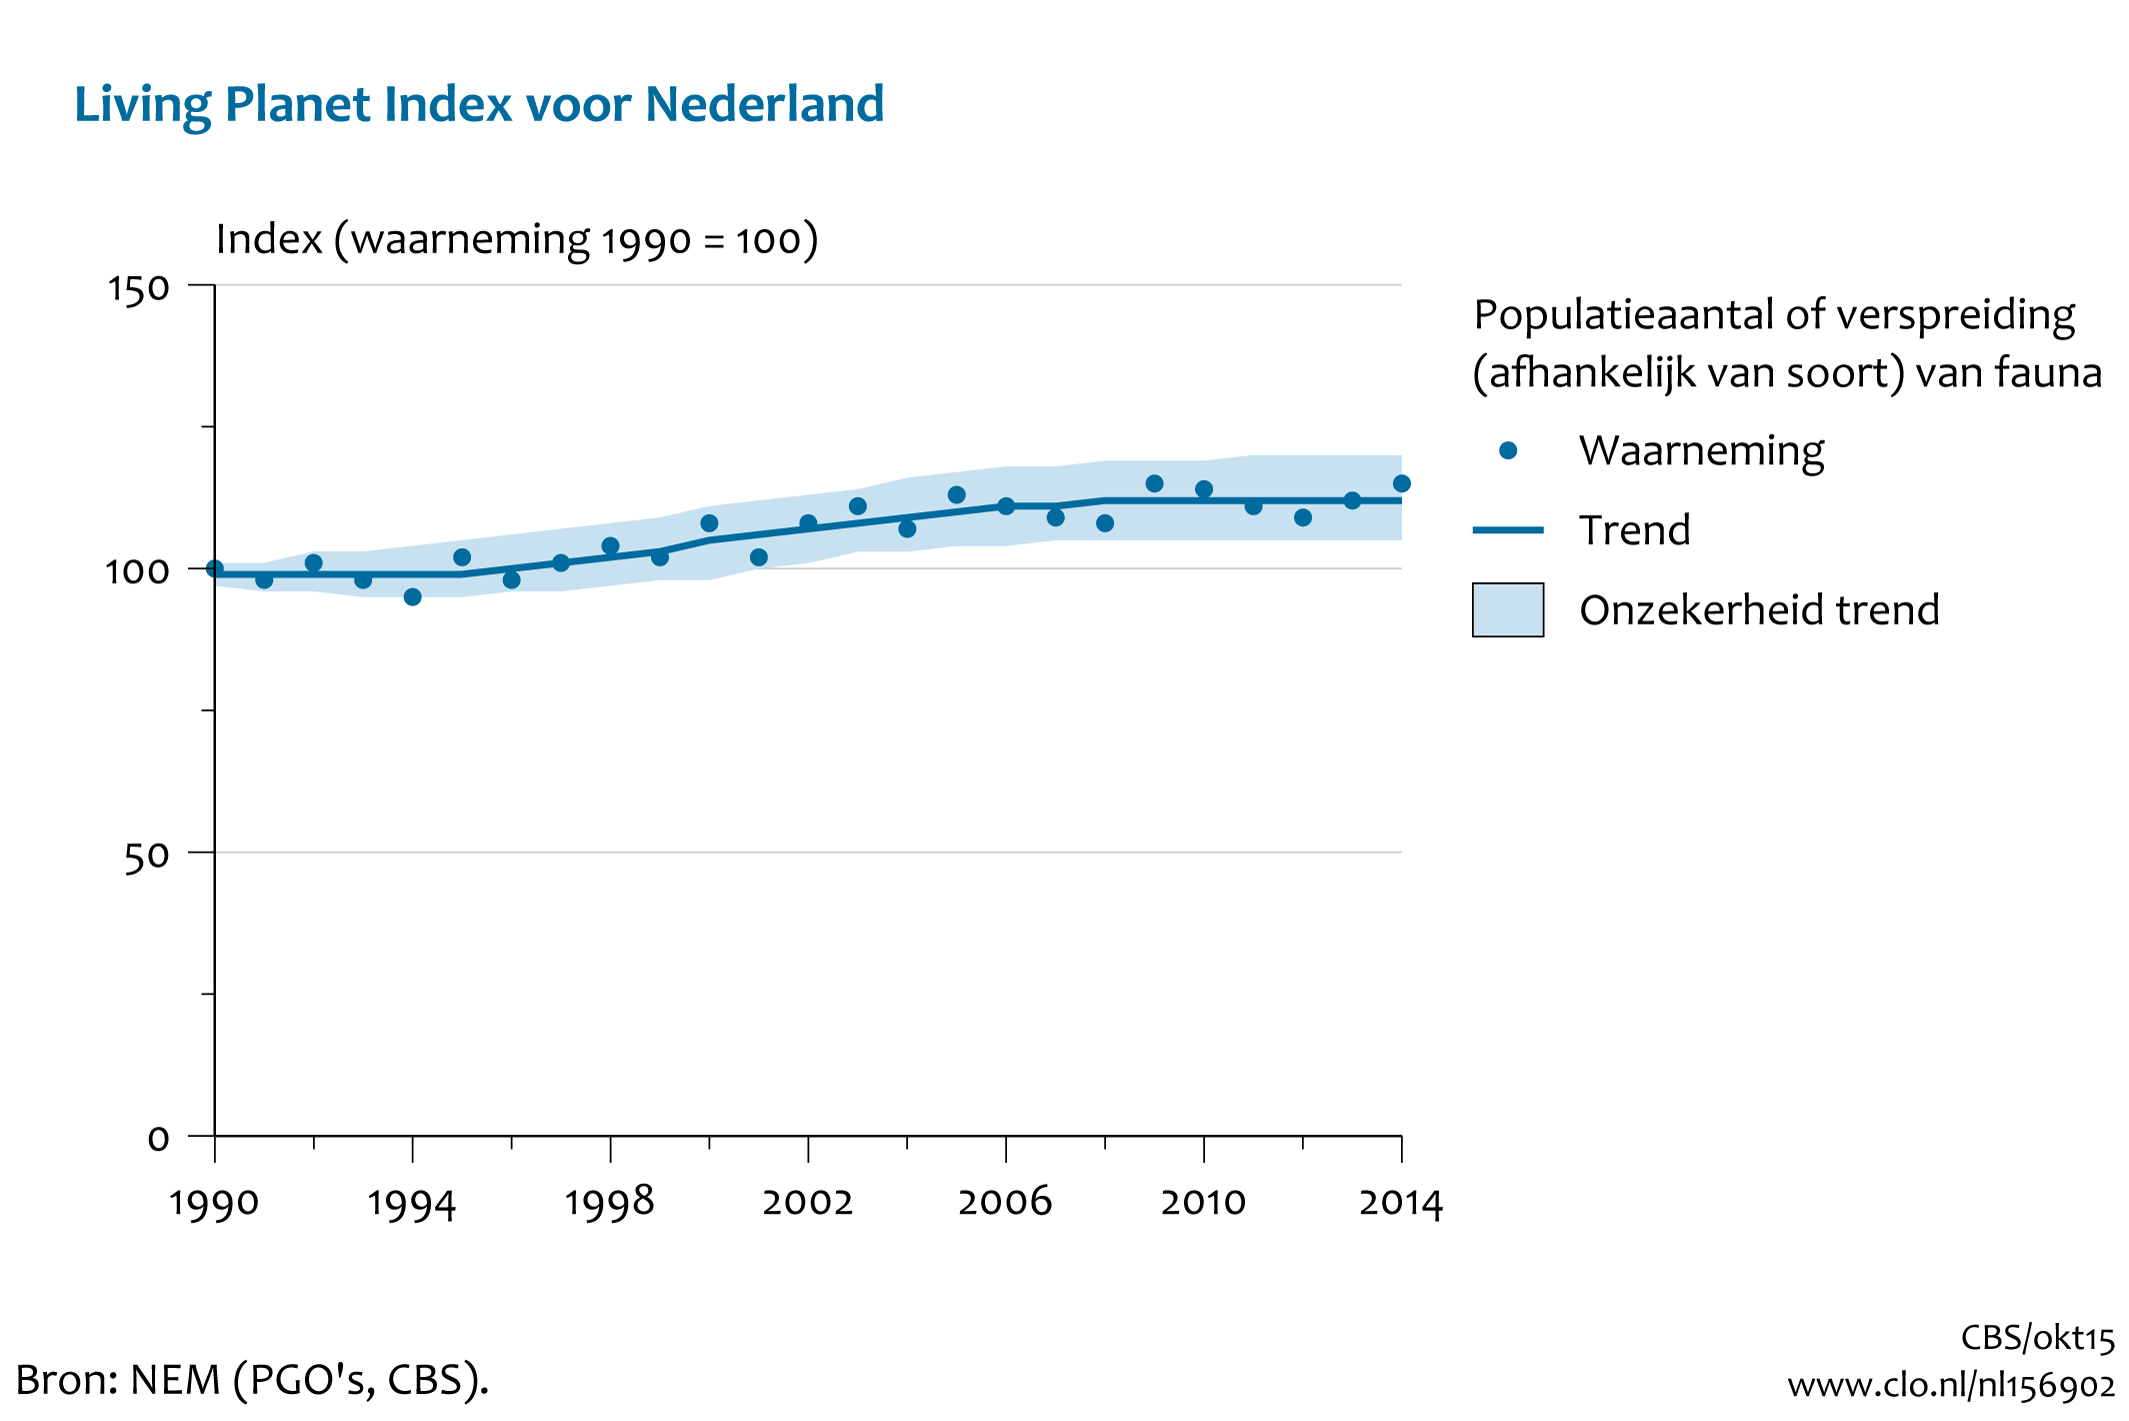 Figuur Living Planet Index NL. In de rest van de tekst wordt deze figuur uitgebreider uitgelegd.